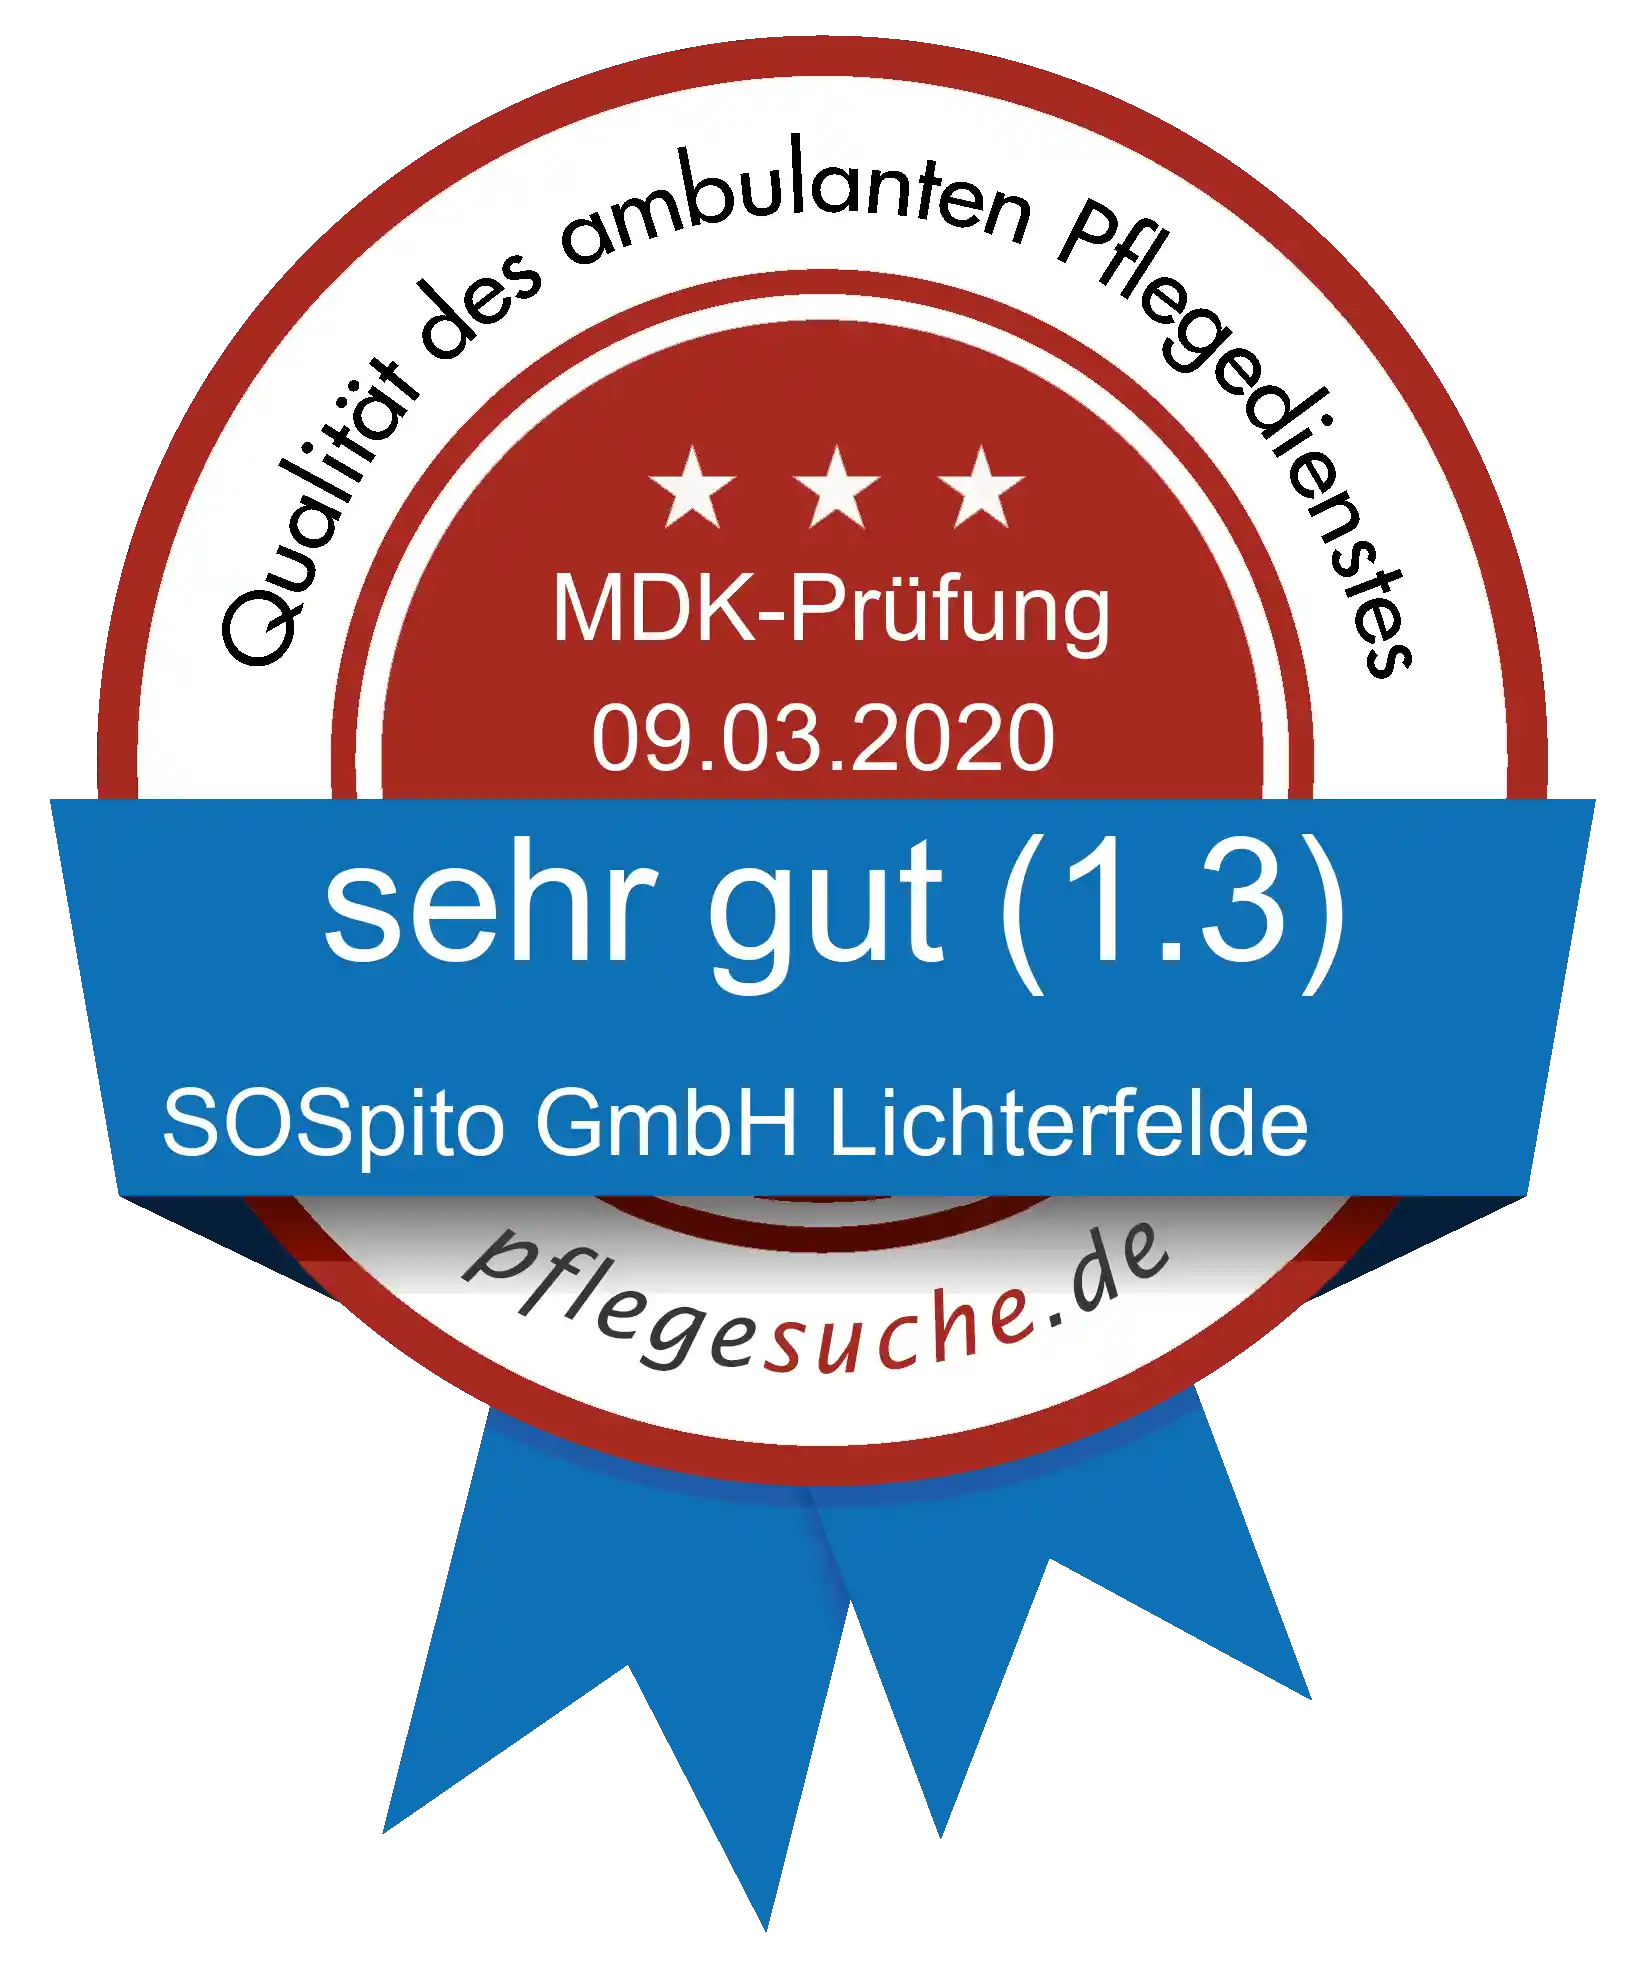 Siegel Benotung: SOSpito GmbH Lichterfelde